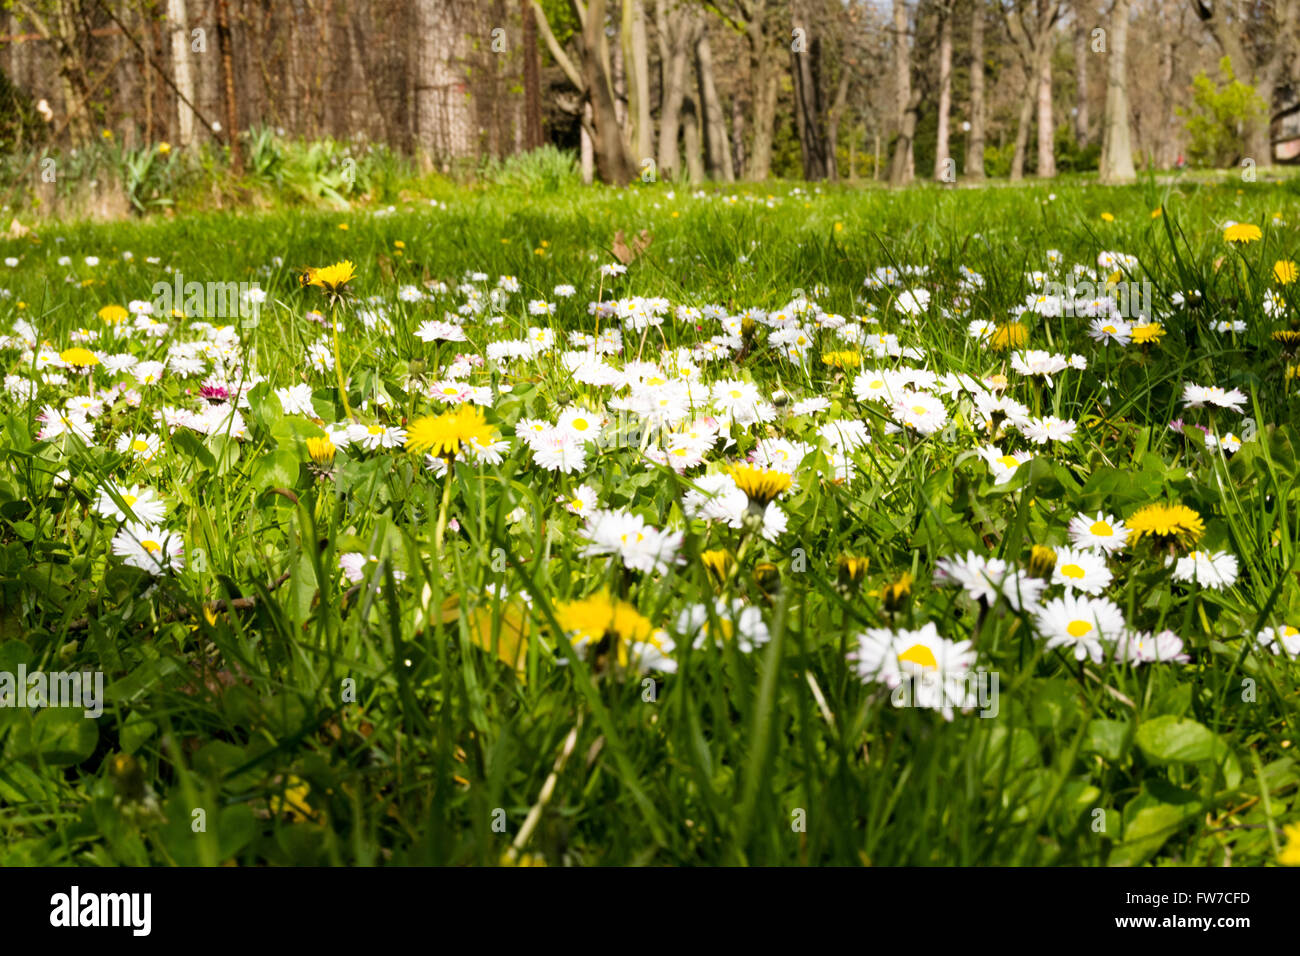 Photo d'un paysage de printemps. Profil faible d'obtenir des informations plus détaillées sur la vie des fleurs. Banque D'Images